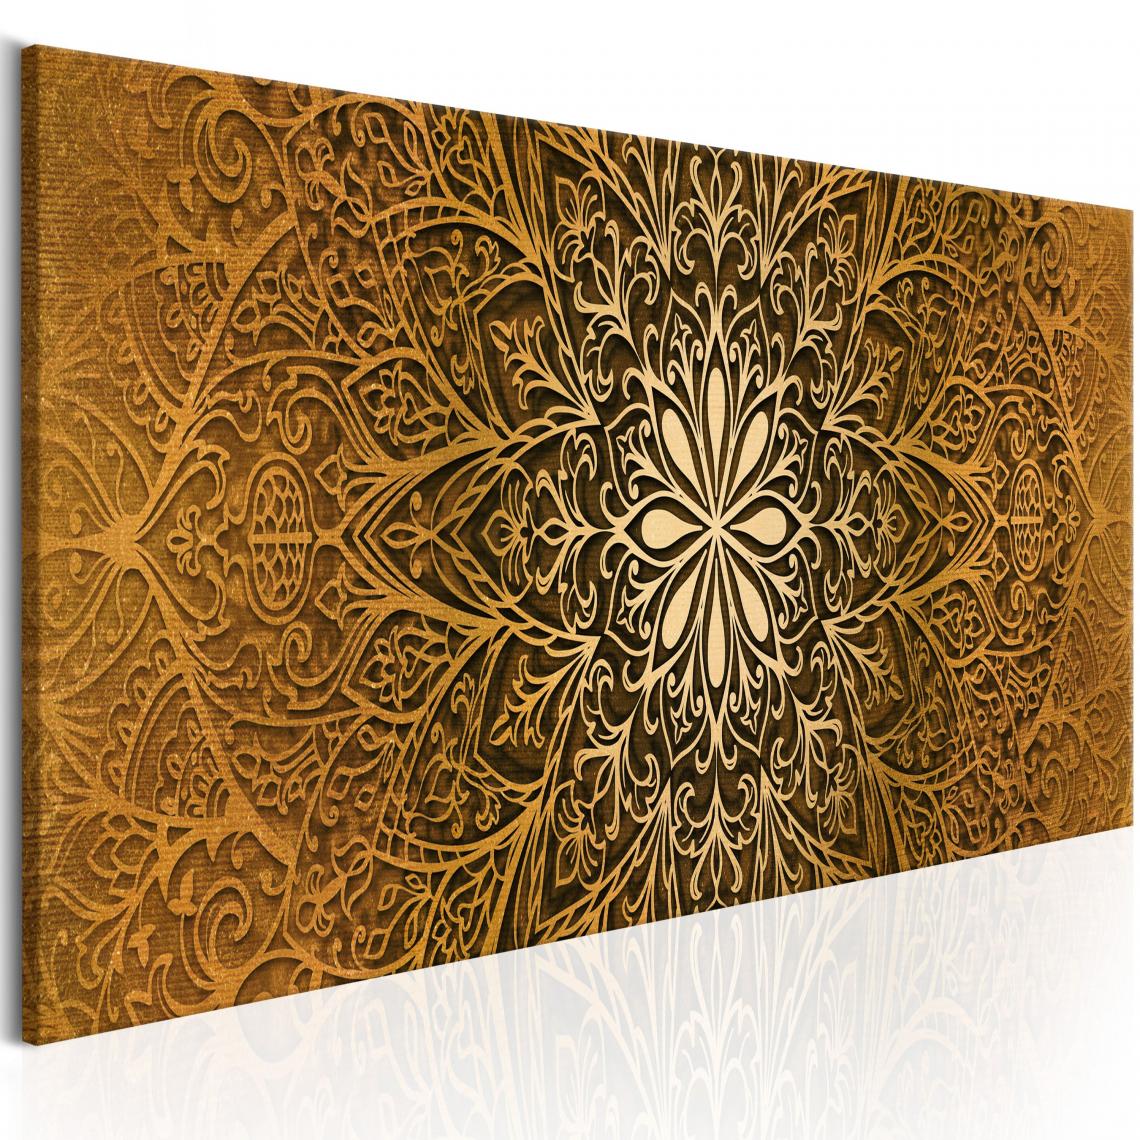 Decoshop26 - Tableau sur toile décoration murale image imprimée cadre en bois à suspendre Finesse dorée 120x40 cm 11_0009058 - Tableaux, peintures